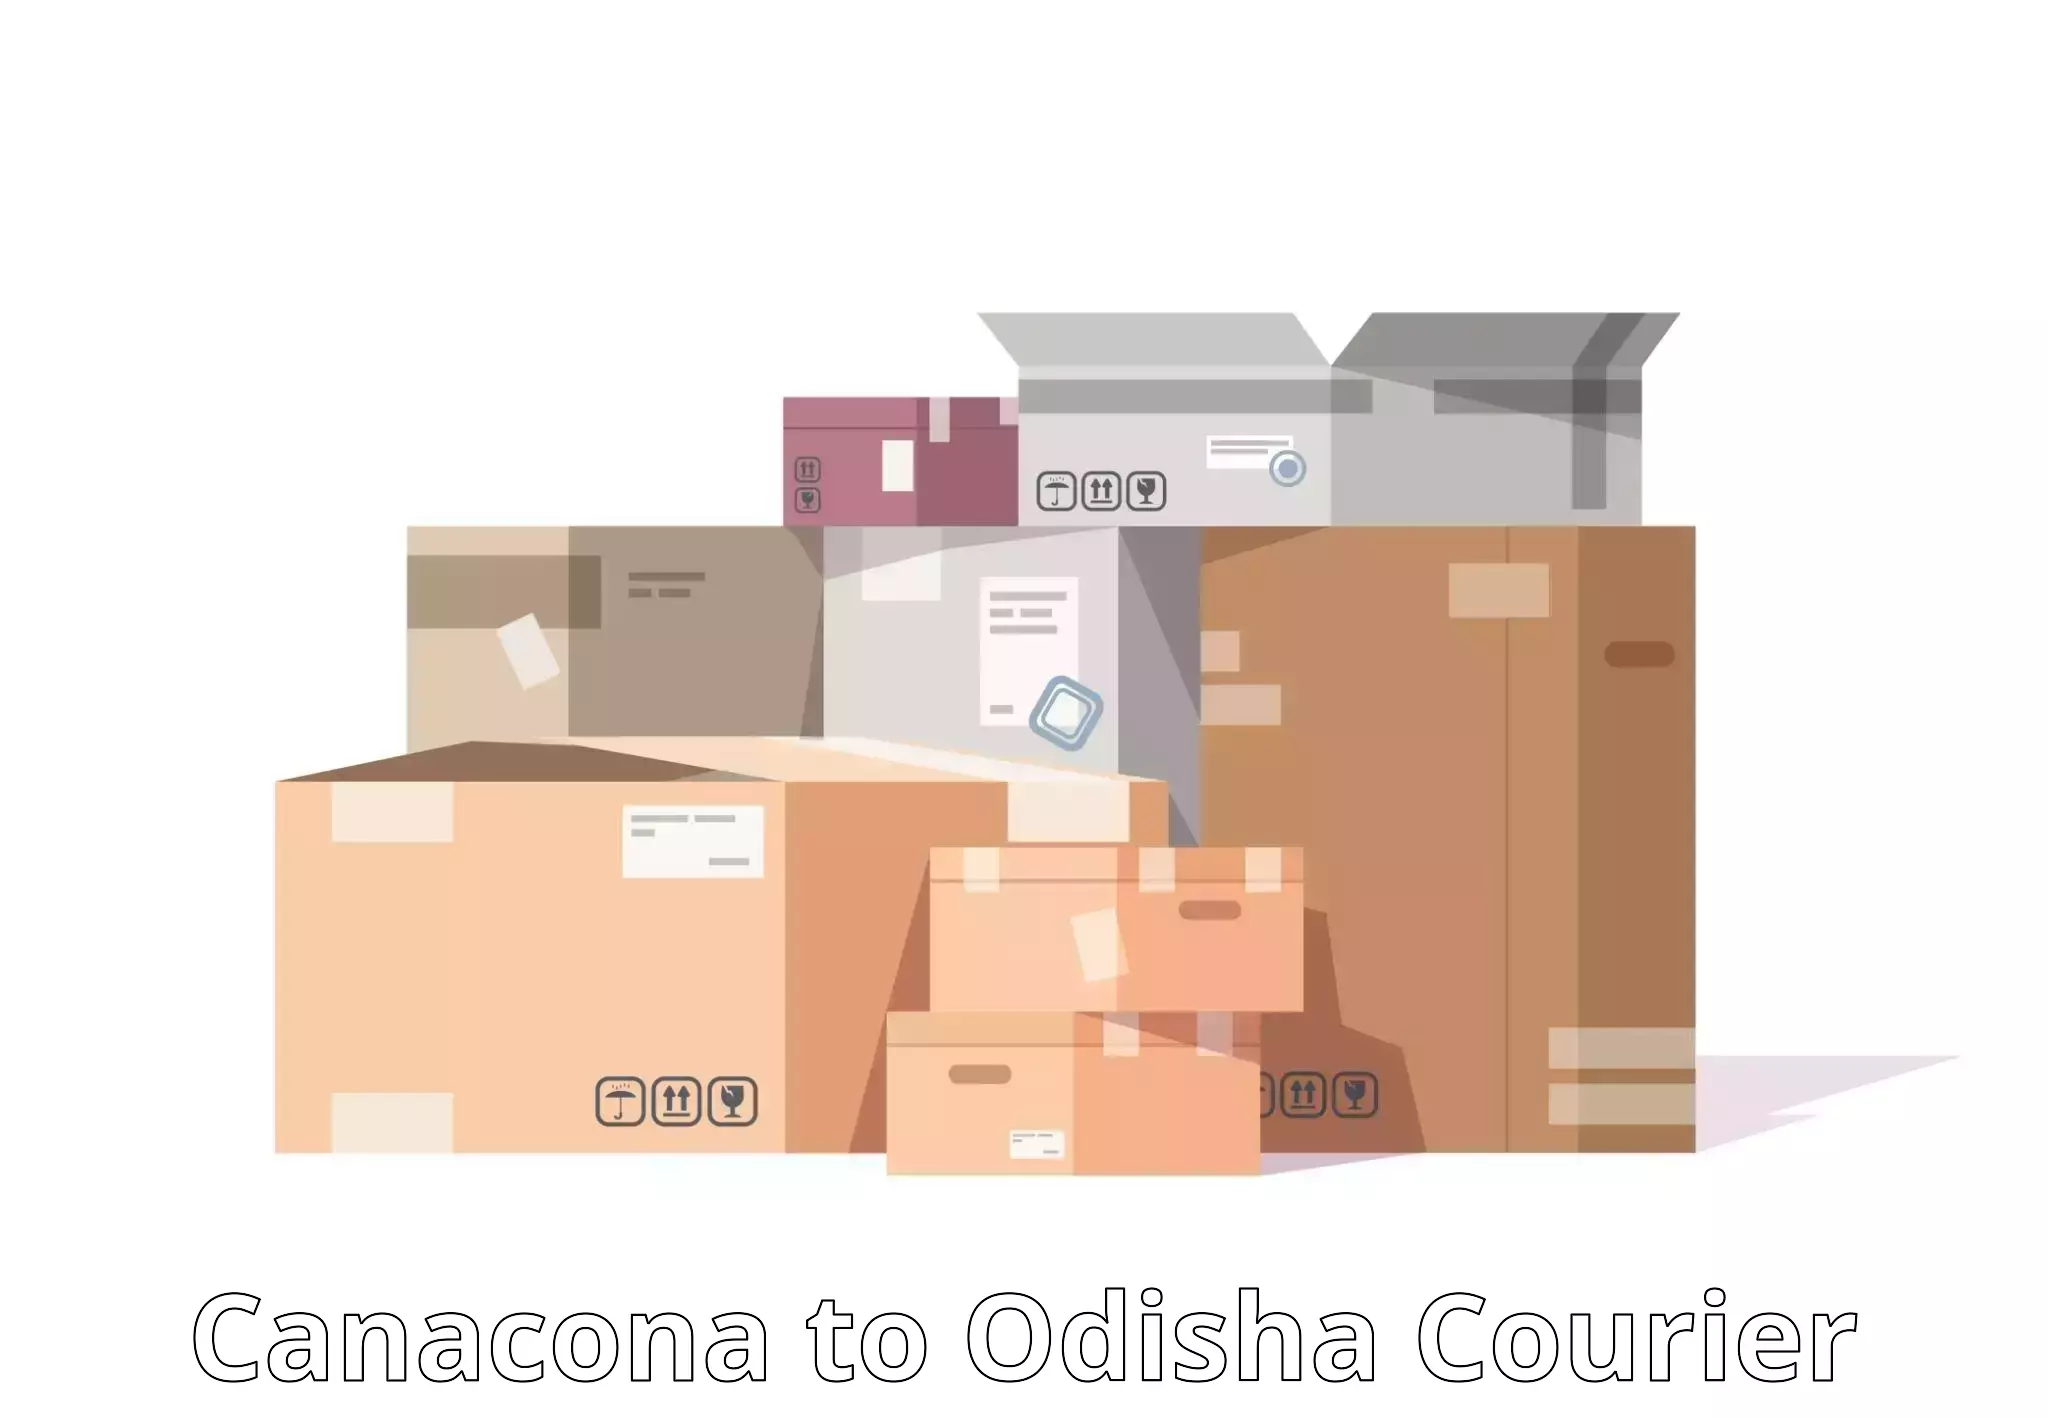 Efficient freight transportation Canacona to Mohana